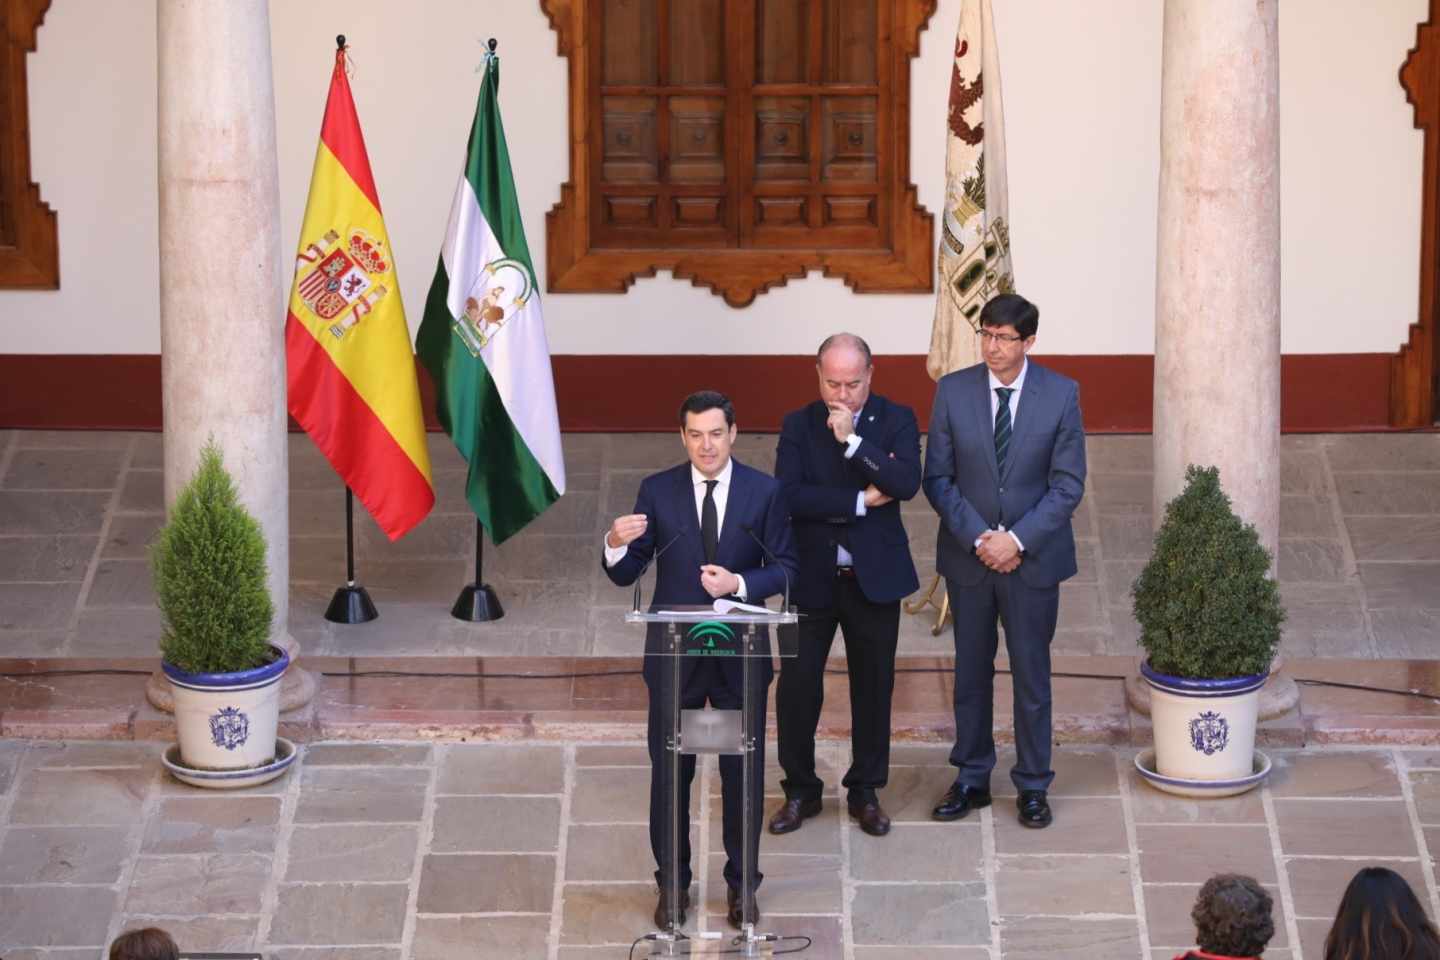 La Junta de Andalucía aprueba auditar 14 entes y bonificará el impuesto de Sucesiones